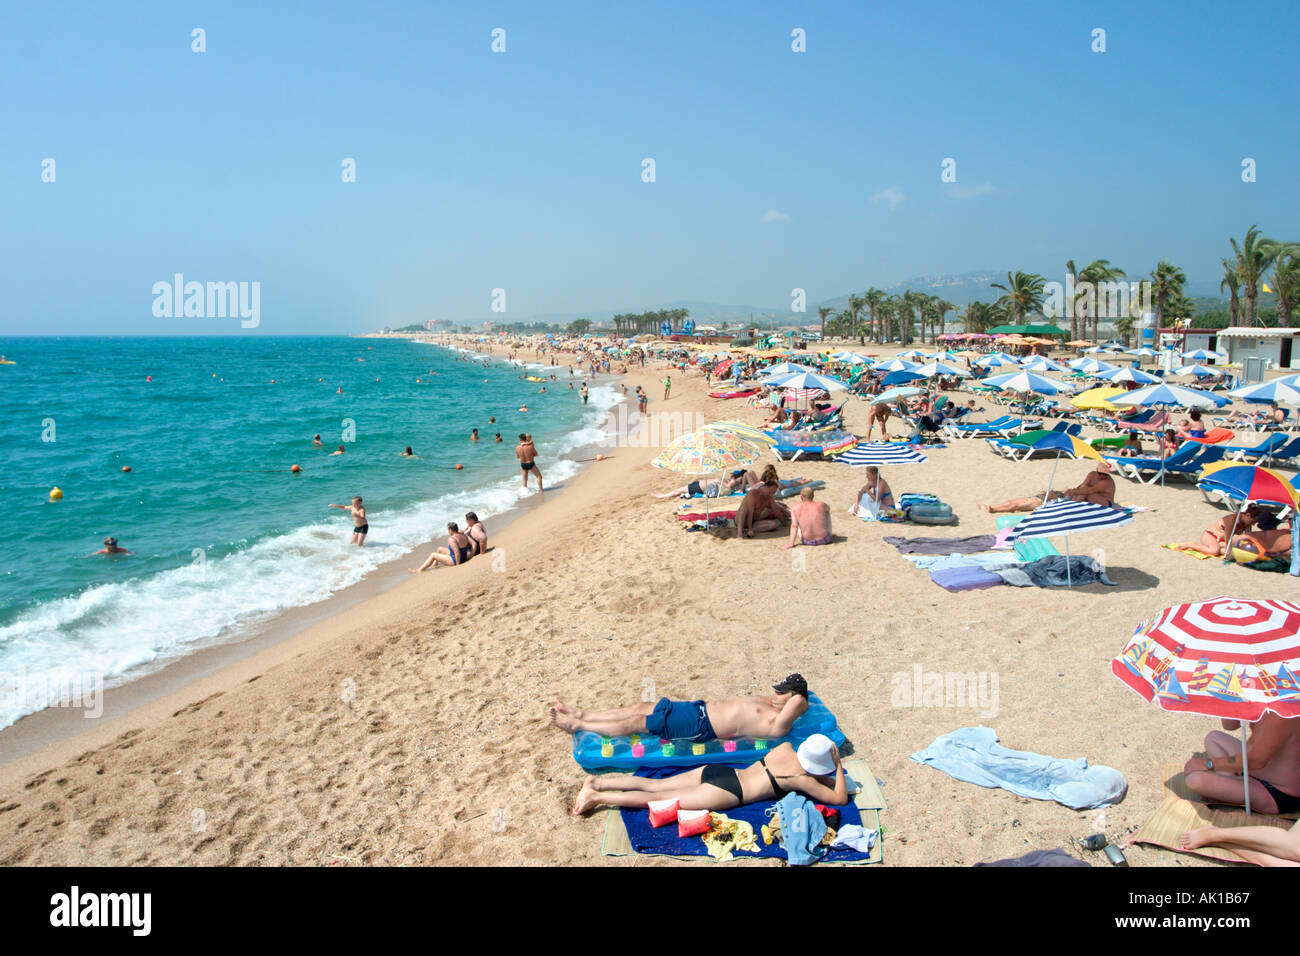 Spiaggia di Santa Susanna, Costa Brava, Catalunya, Spagna Foto Stock